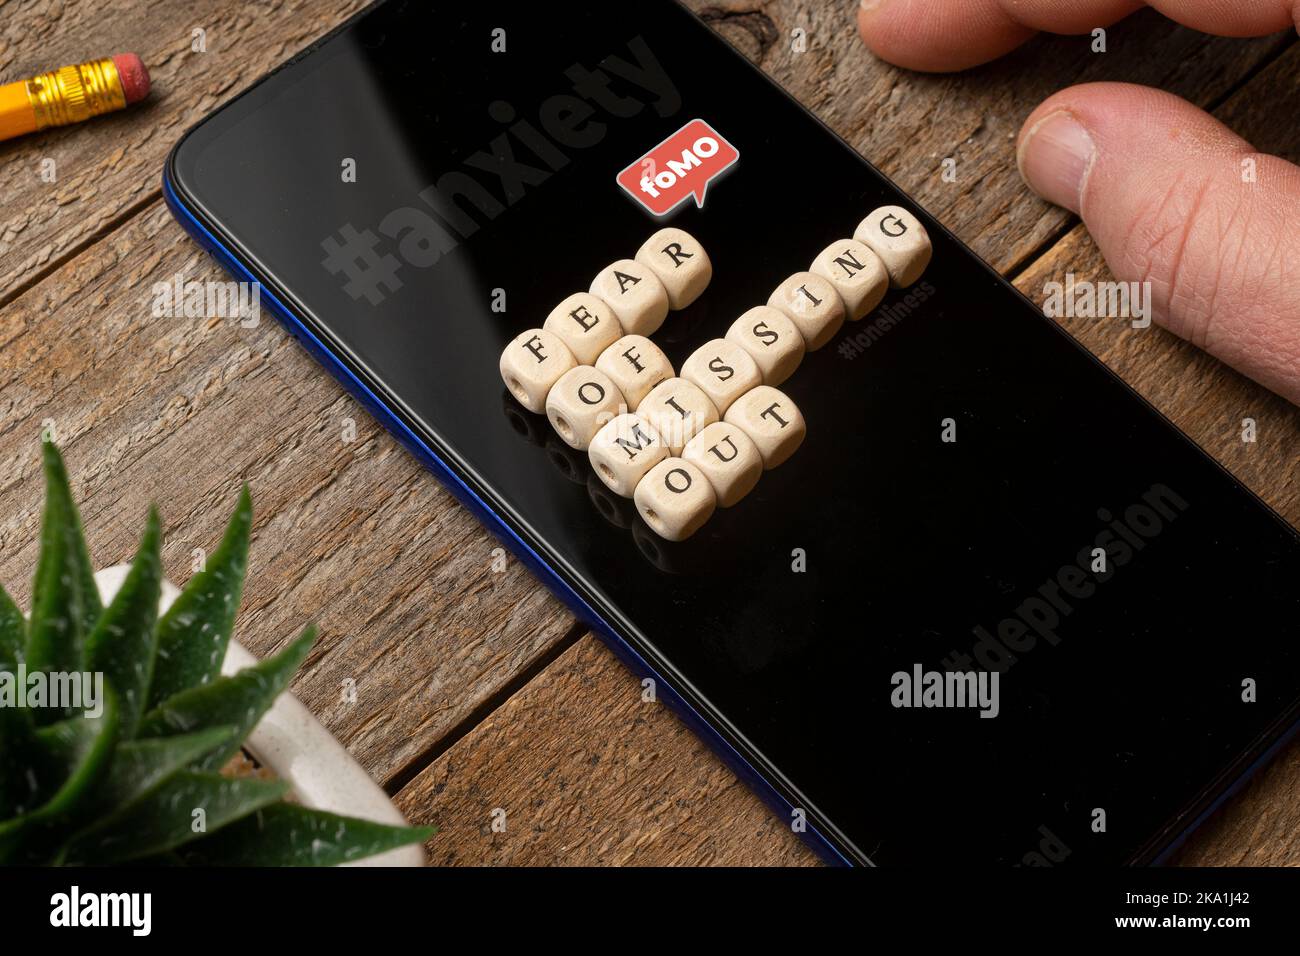 Concetto fomo (Fear of Missing out): Smartphone su un tavolo di legno con qualche dado che compone una frase. Foto Stock